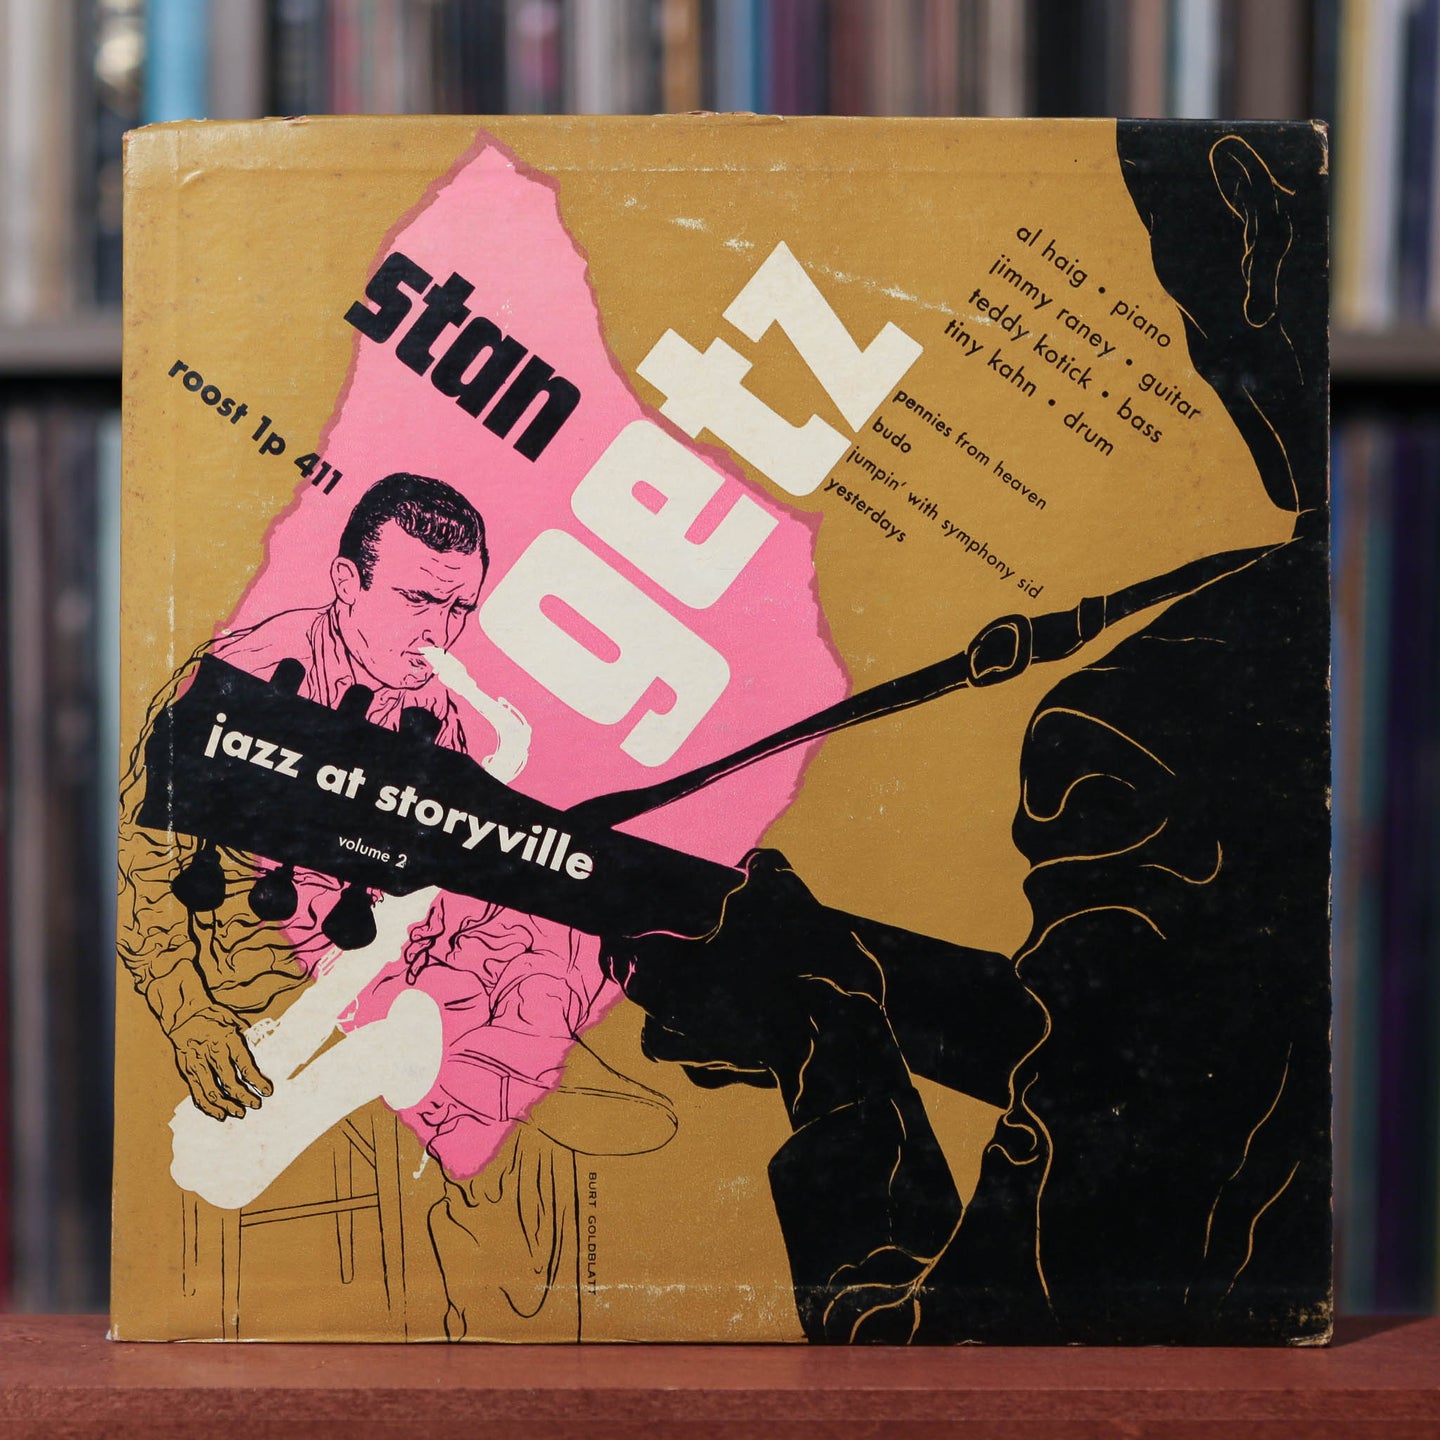 Stan Getz Quintet - Jazz At Storyville Volume 2 - 10